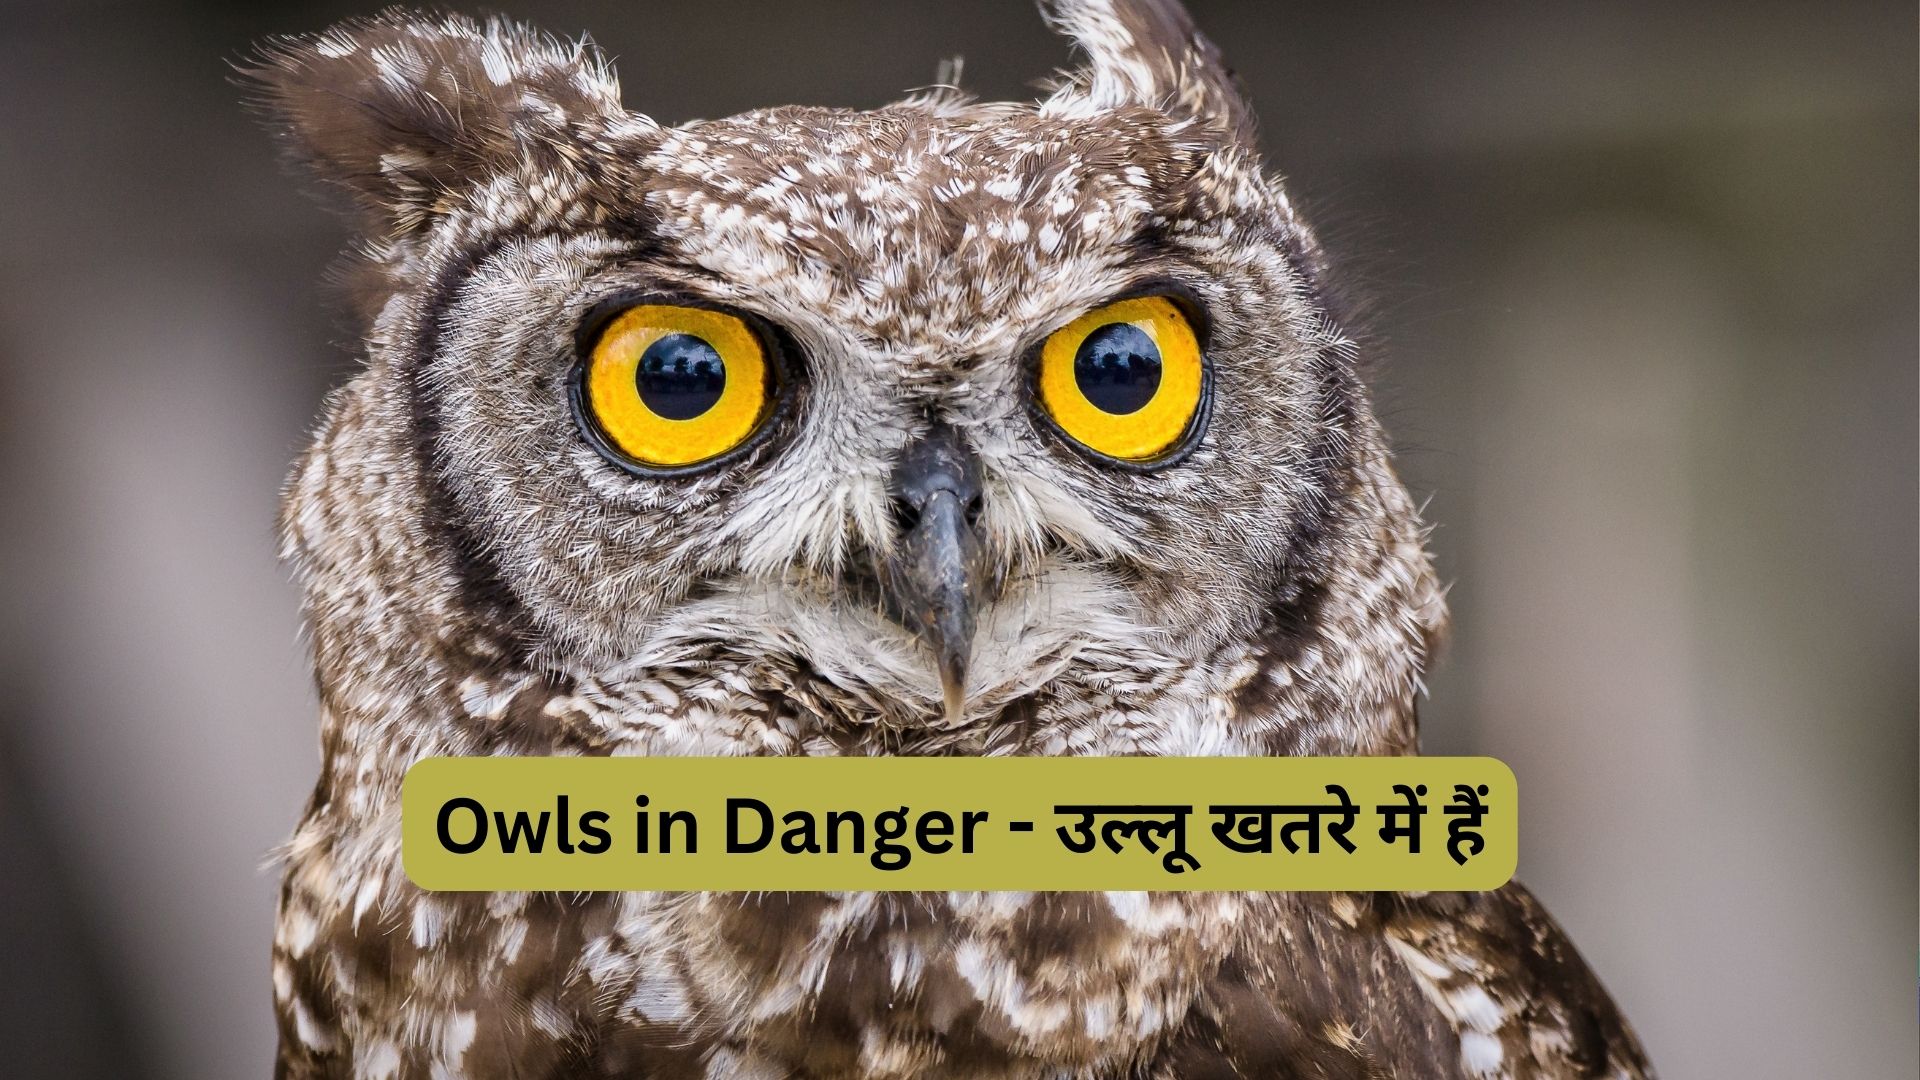 Owls in Danger - उल्लू खतरे में हैं